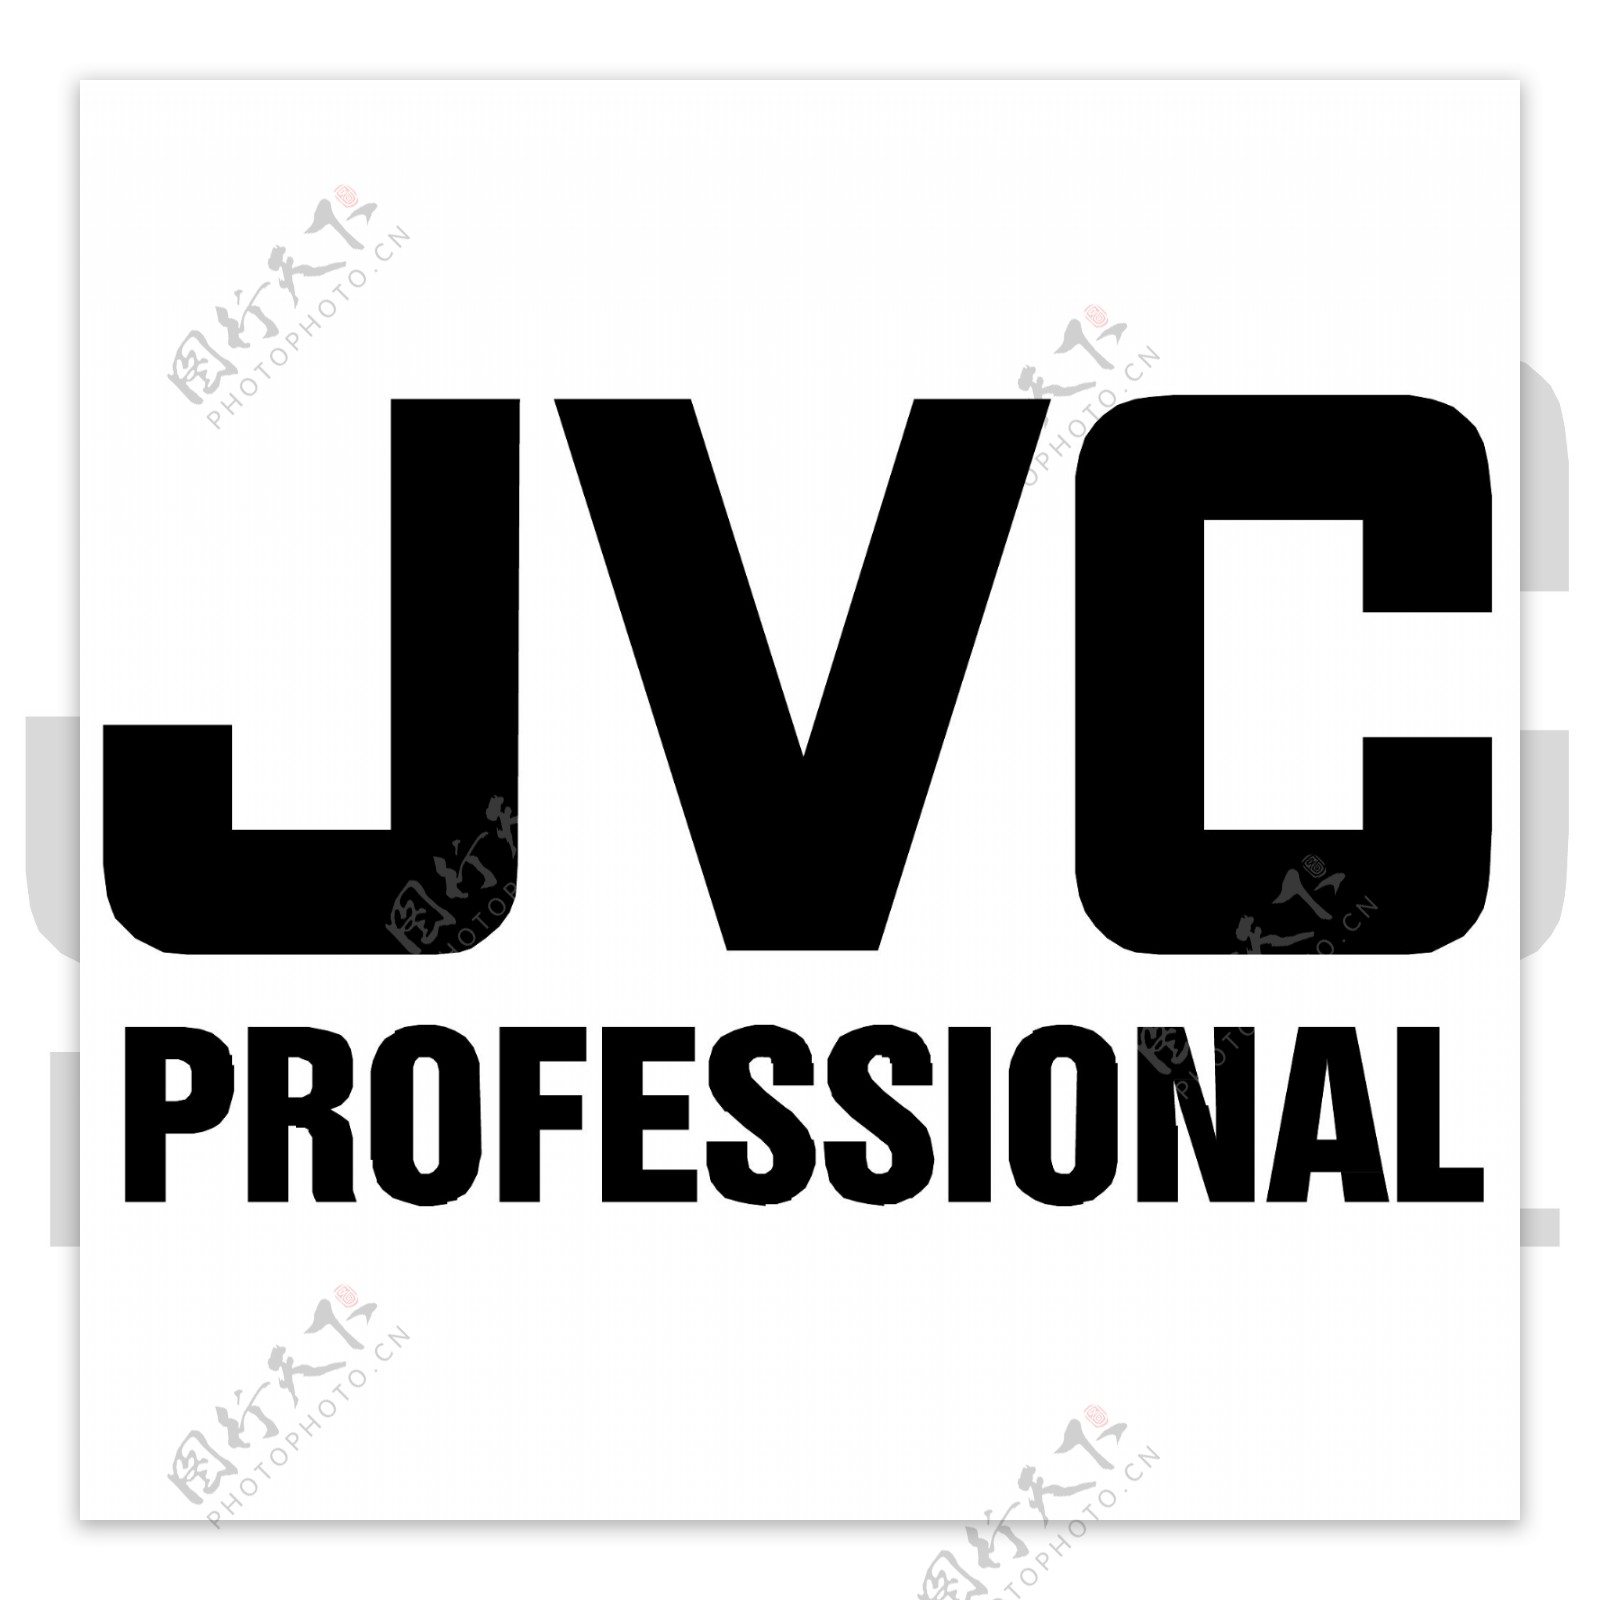 JVG简约大字体logo设计